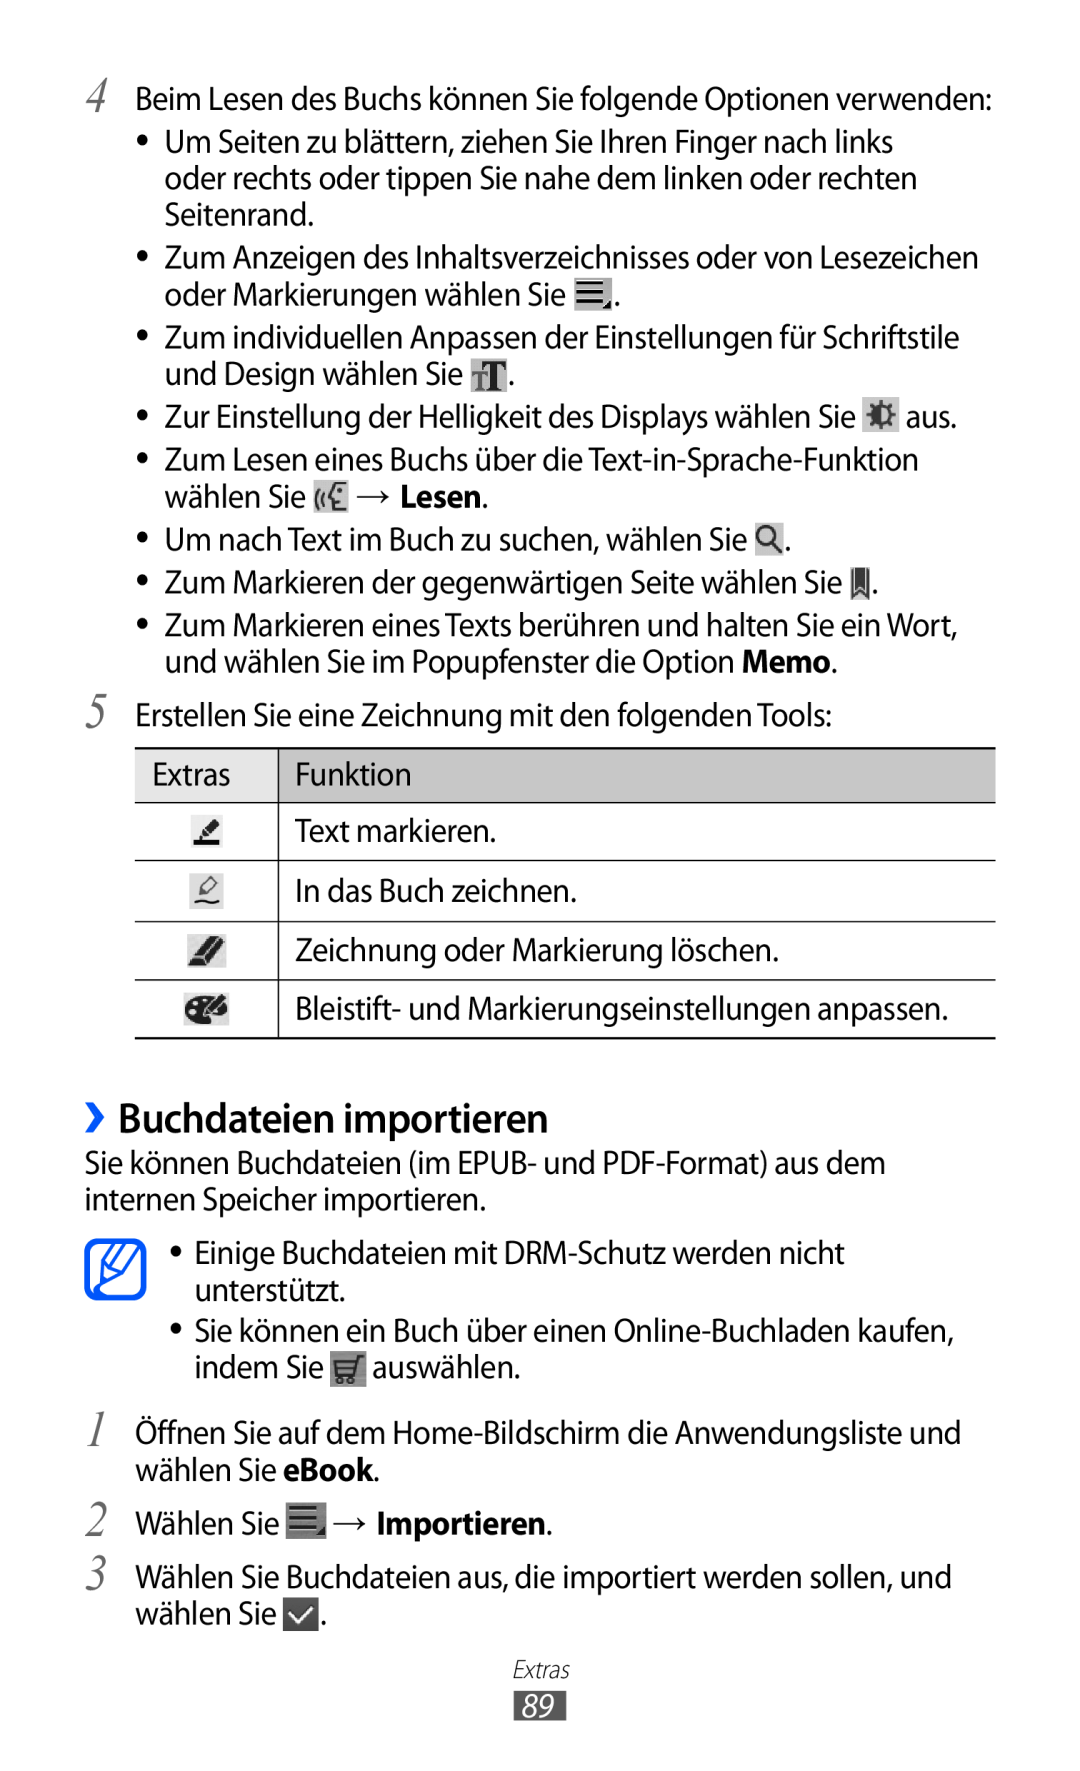 Samsung GT-P7501FKDDBT manual ››Buchdateien importieren, Beim Lesen des Buchs können Sie folgende Optionen verwenden 